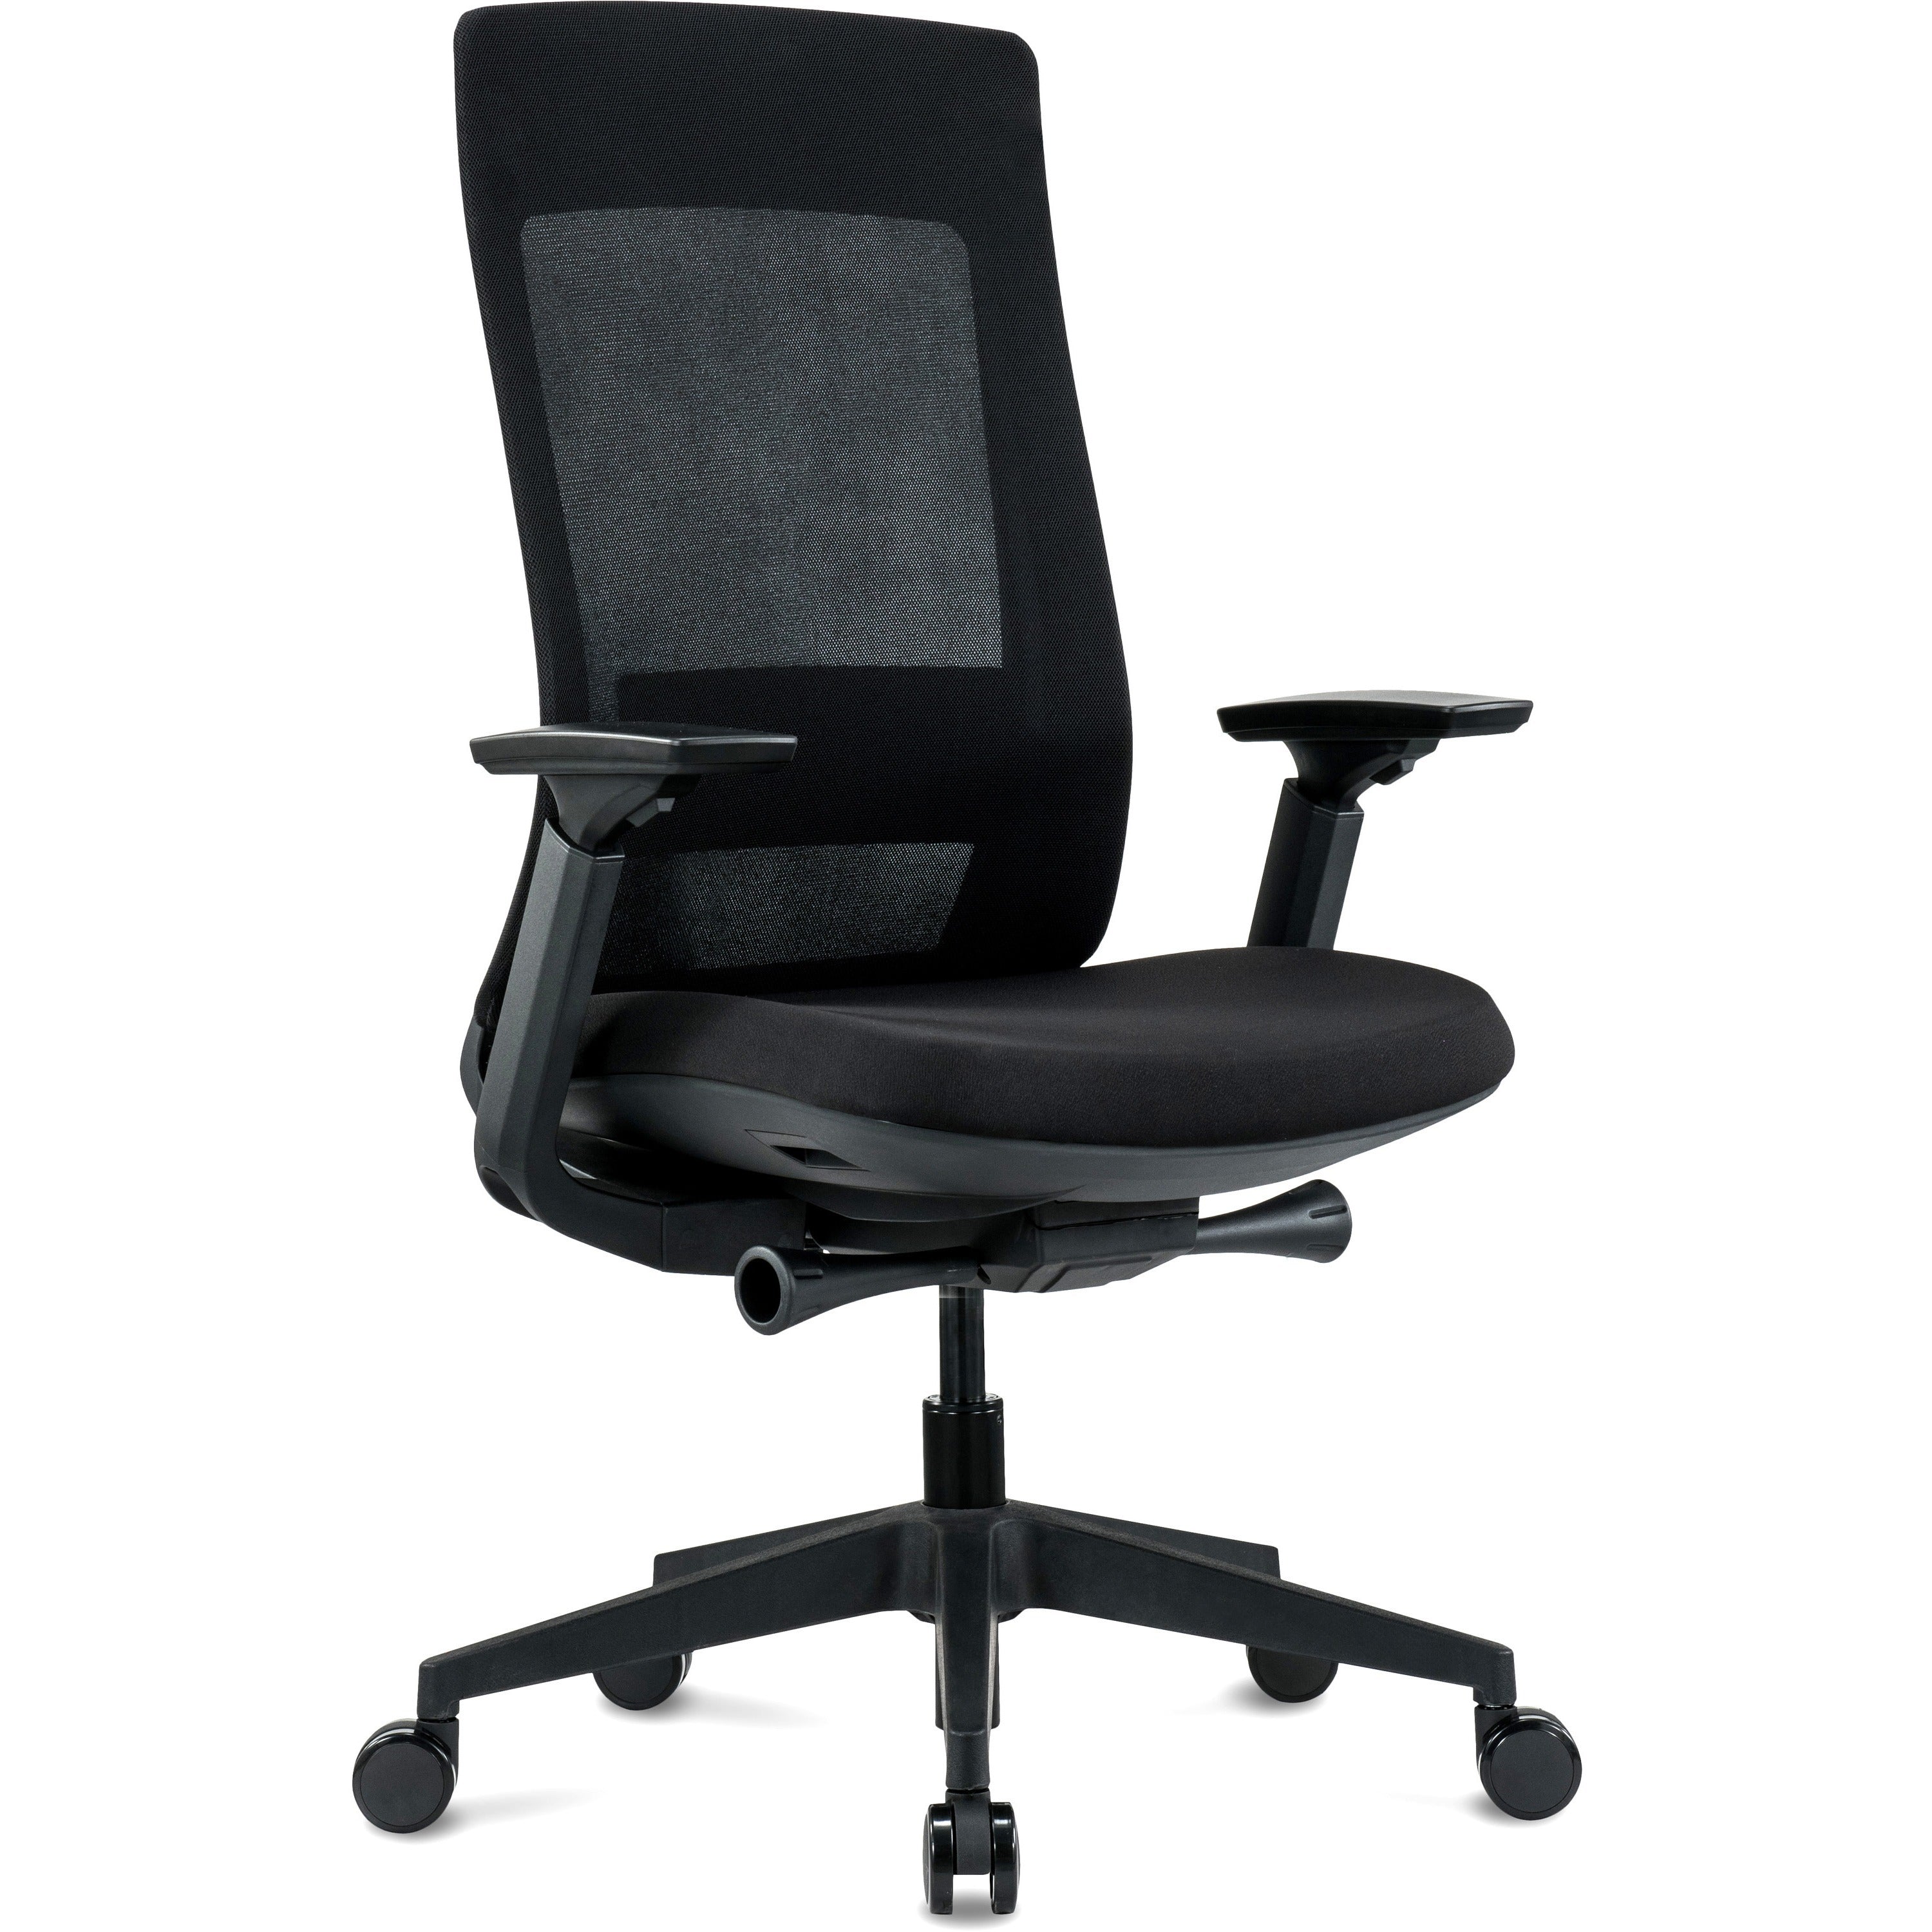 eurotech-elevate-chair-black-fabric-seat-black-mesh-back-black-frame-5-star-base-armrest-1-each_eutelv2blkfsblk - 1